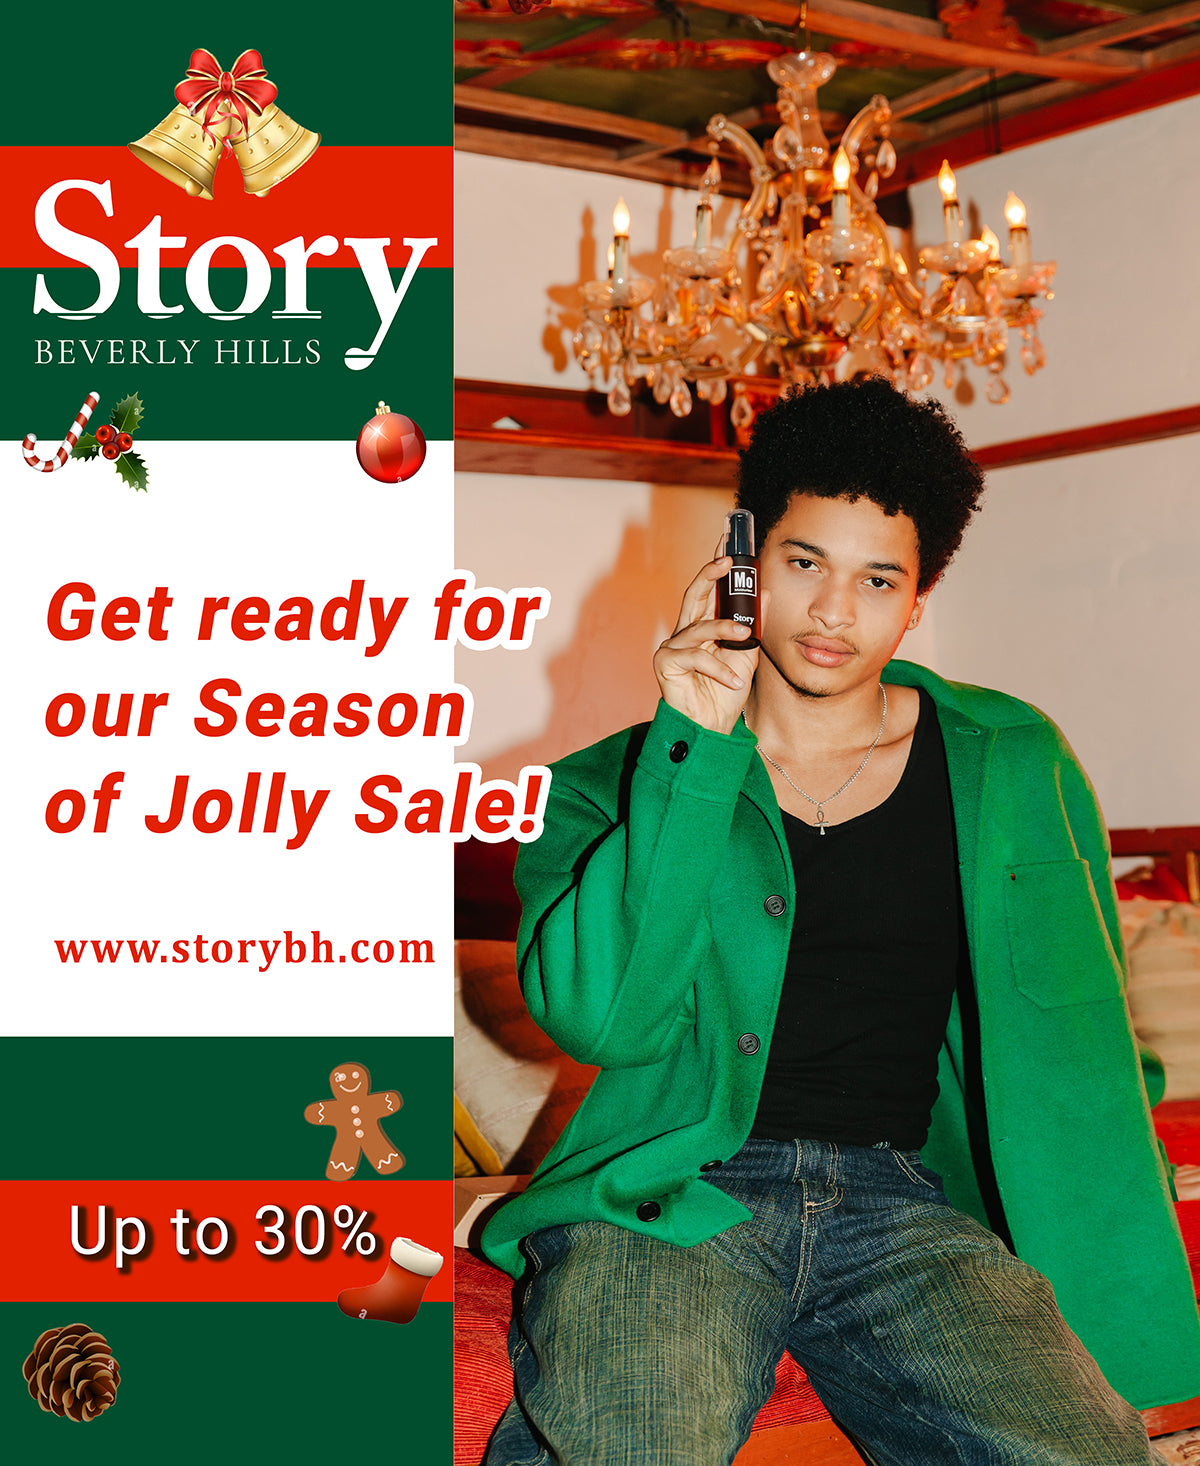 Joly season sale!